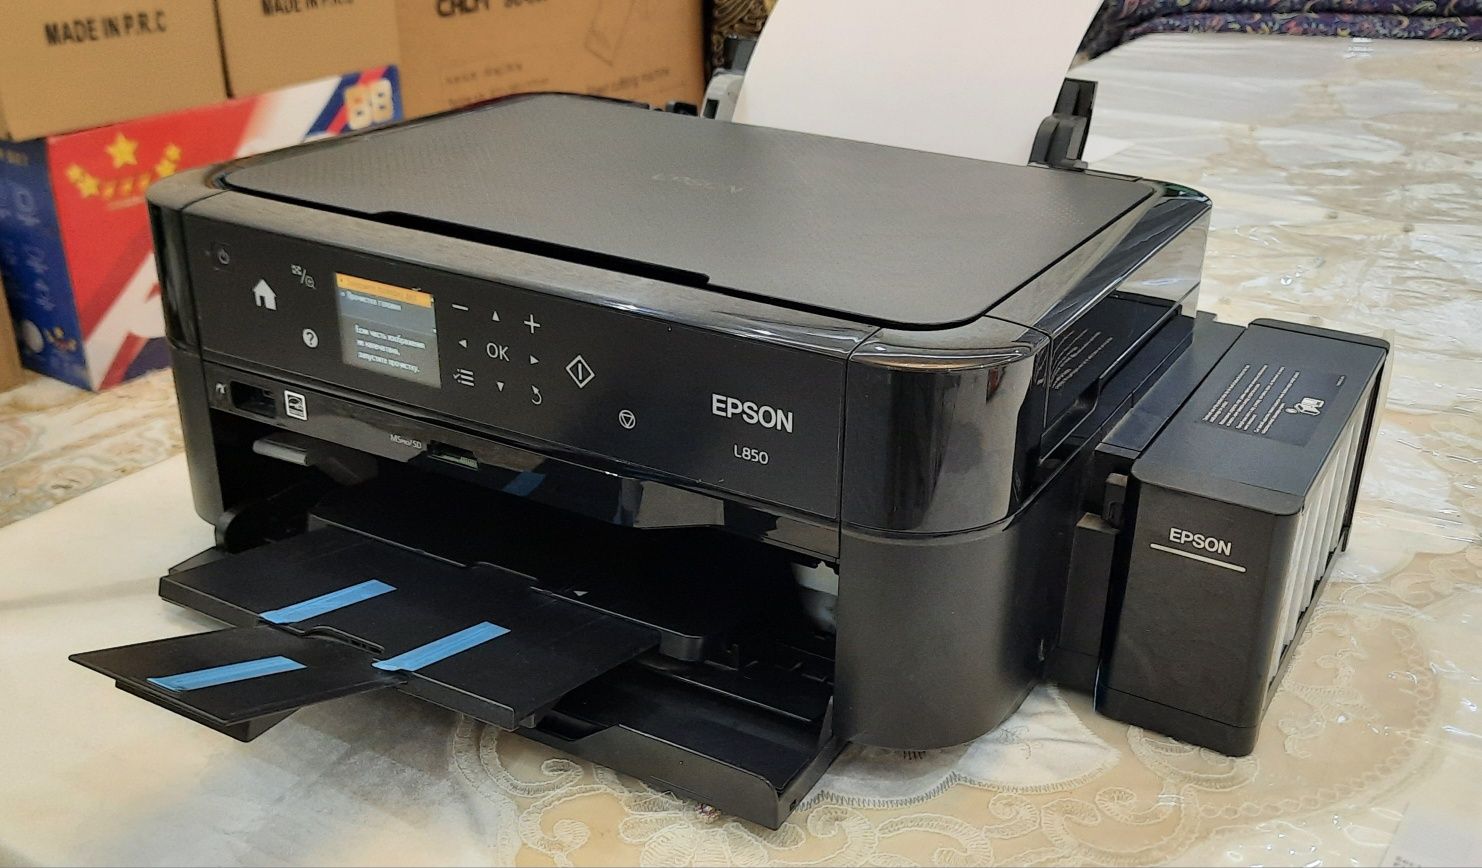 Epson l850 струйный принтер  (3 в 1 )